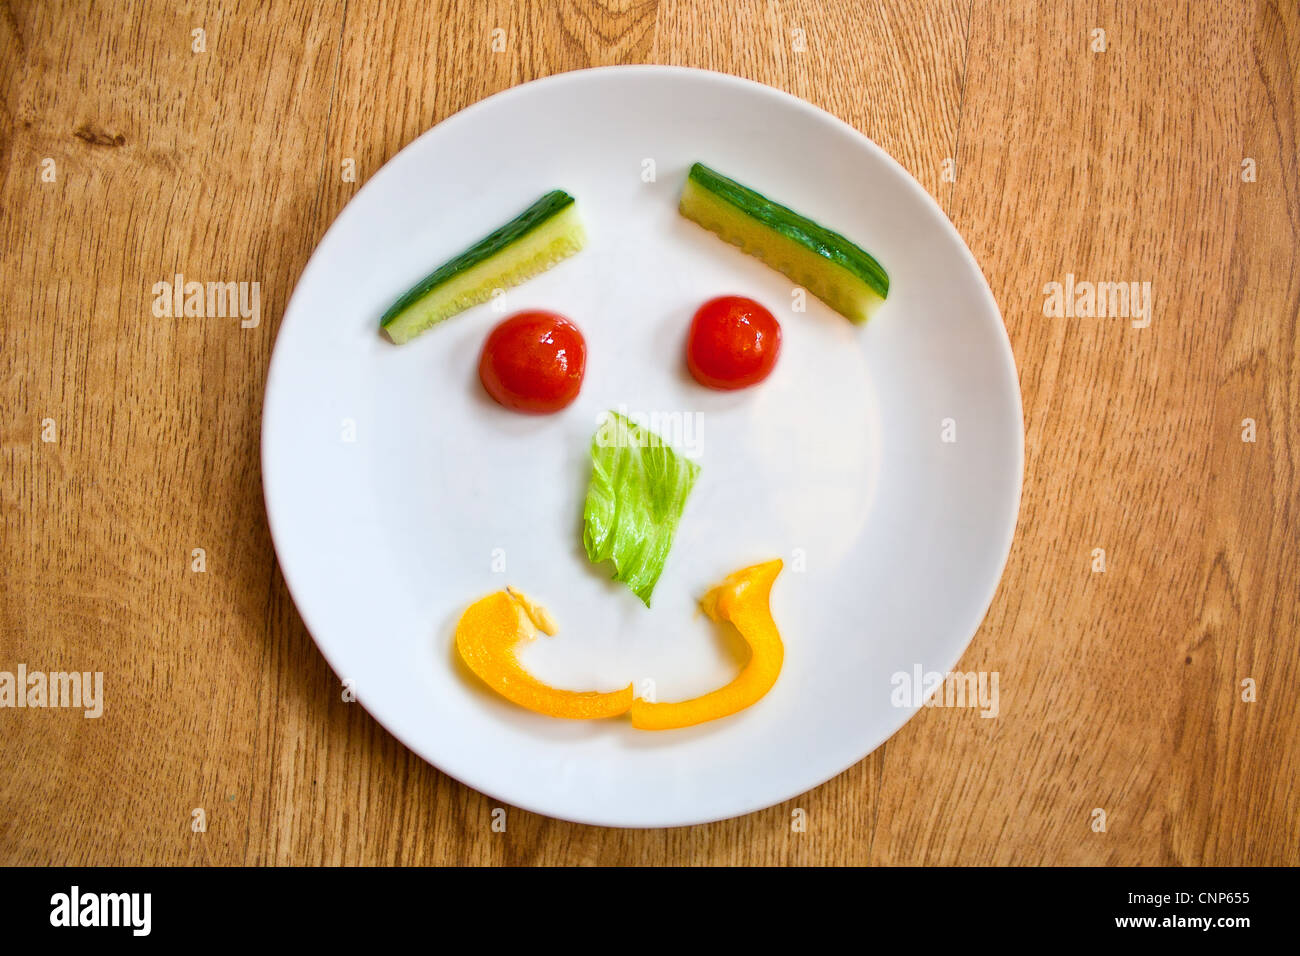 Teller mit gesunden Salat in ein Smiley-Gesicht mit Cherry-Tomaten, Salat, Gurke und gelbe Paprika angezeigt. Stockfoto